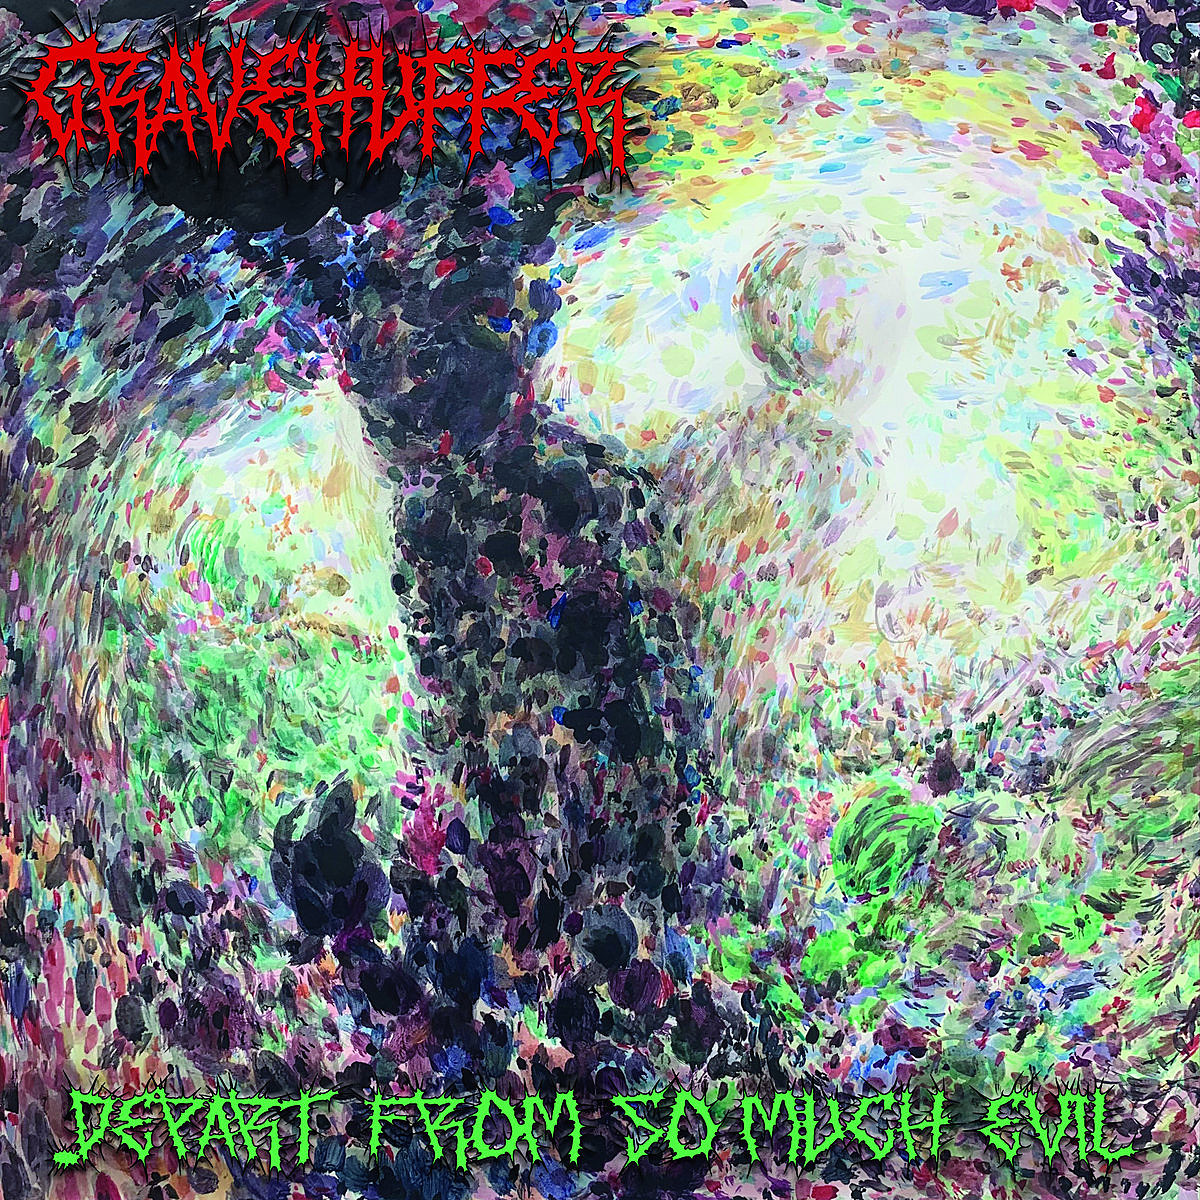 Gravehuffer - Depart from So Much Evil